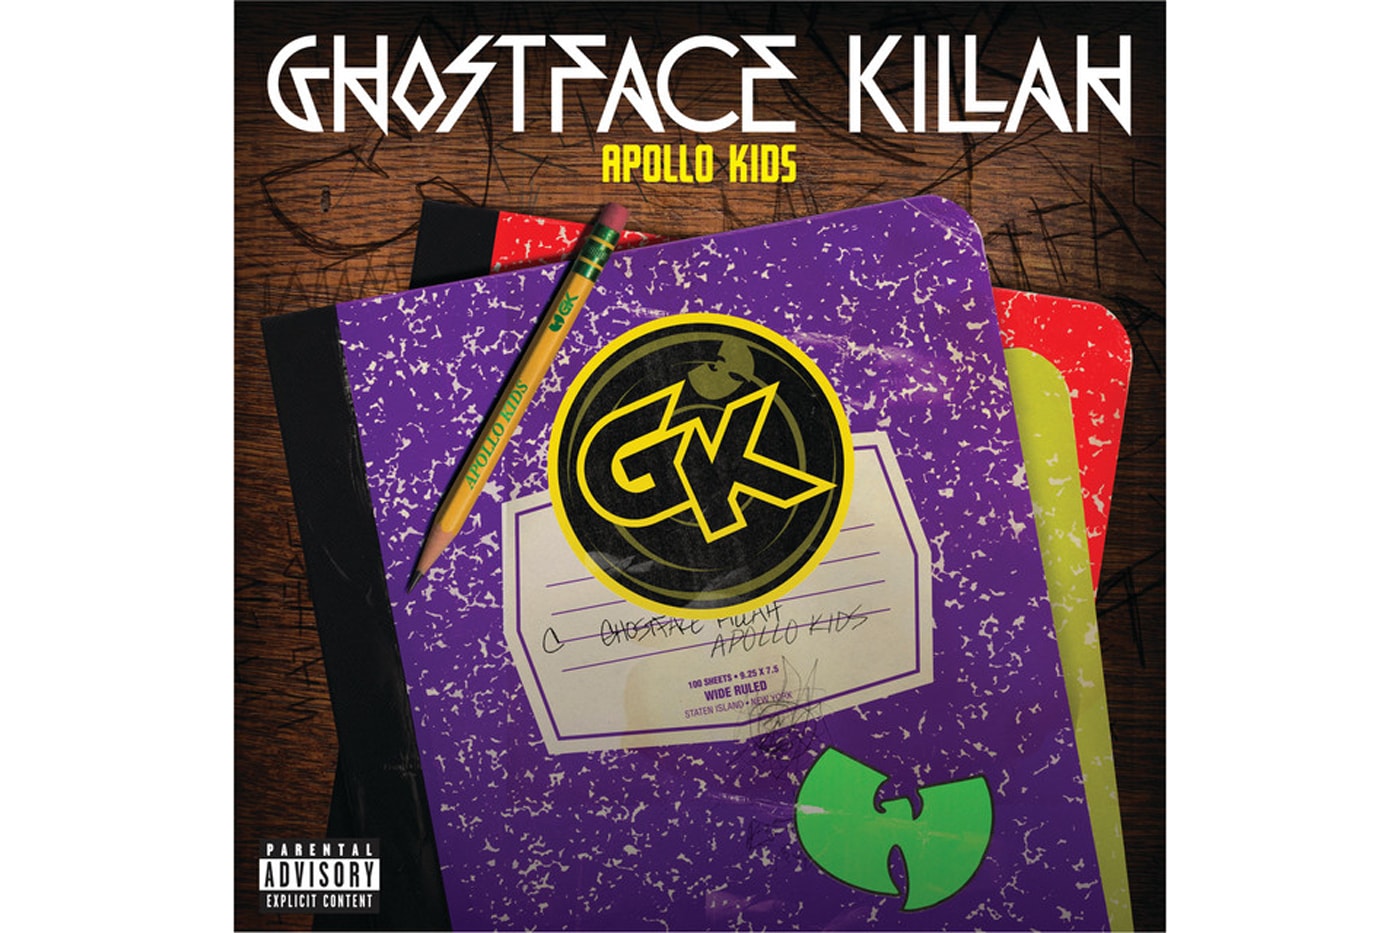 Ghostface Killah featuring Joell Ortiz & The Game - Drama